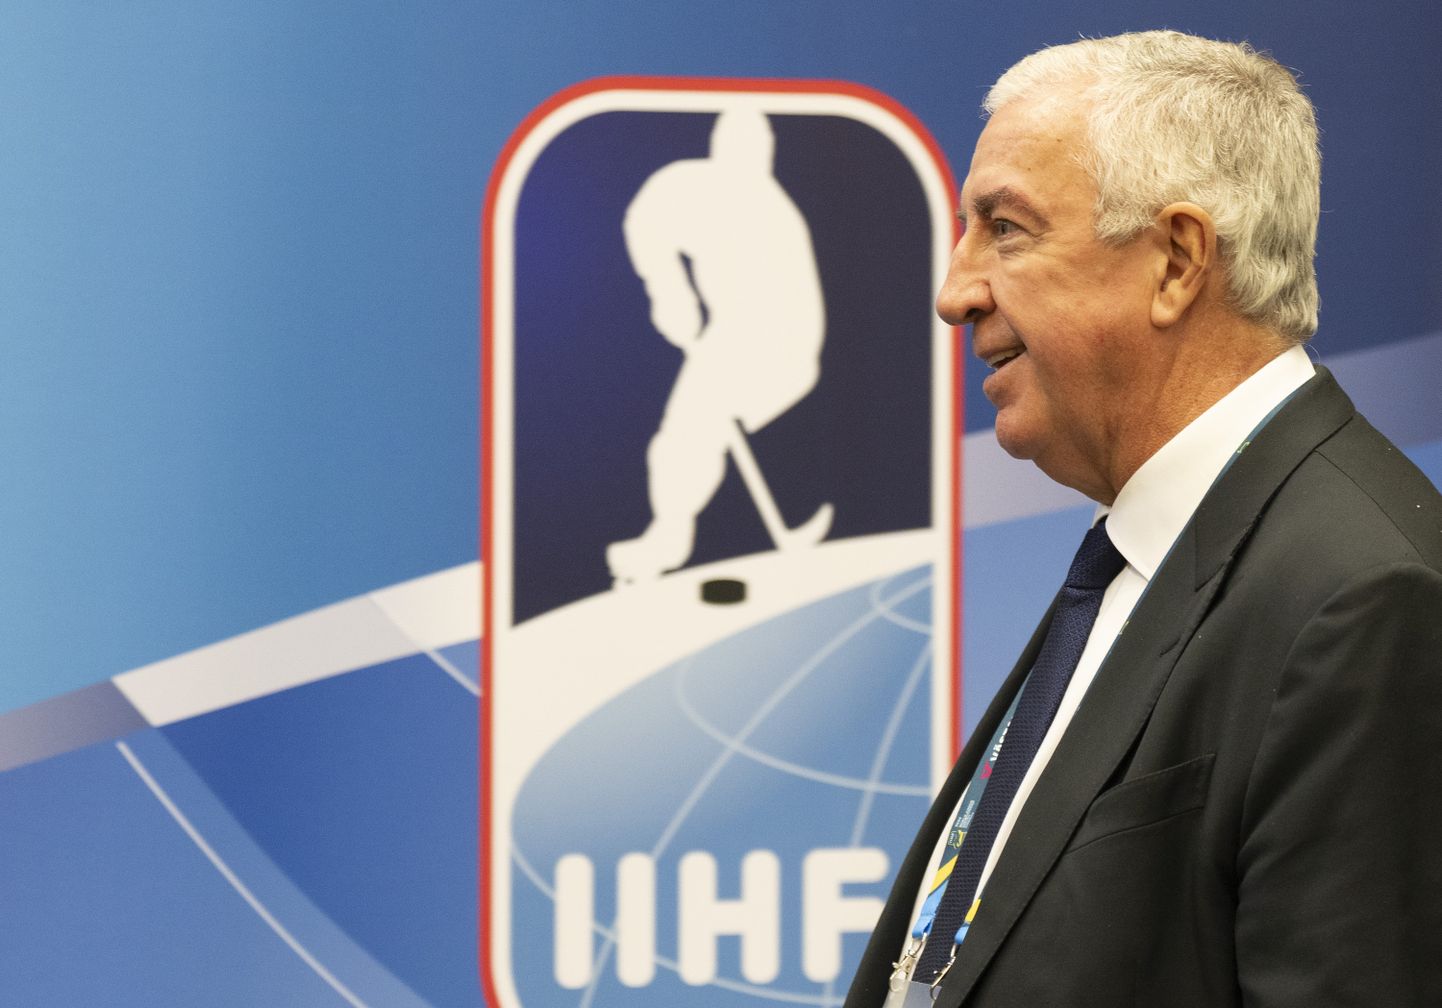 IIHFi president Luc Tardif.